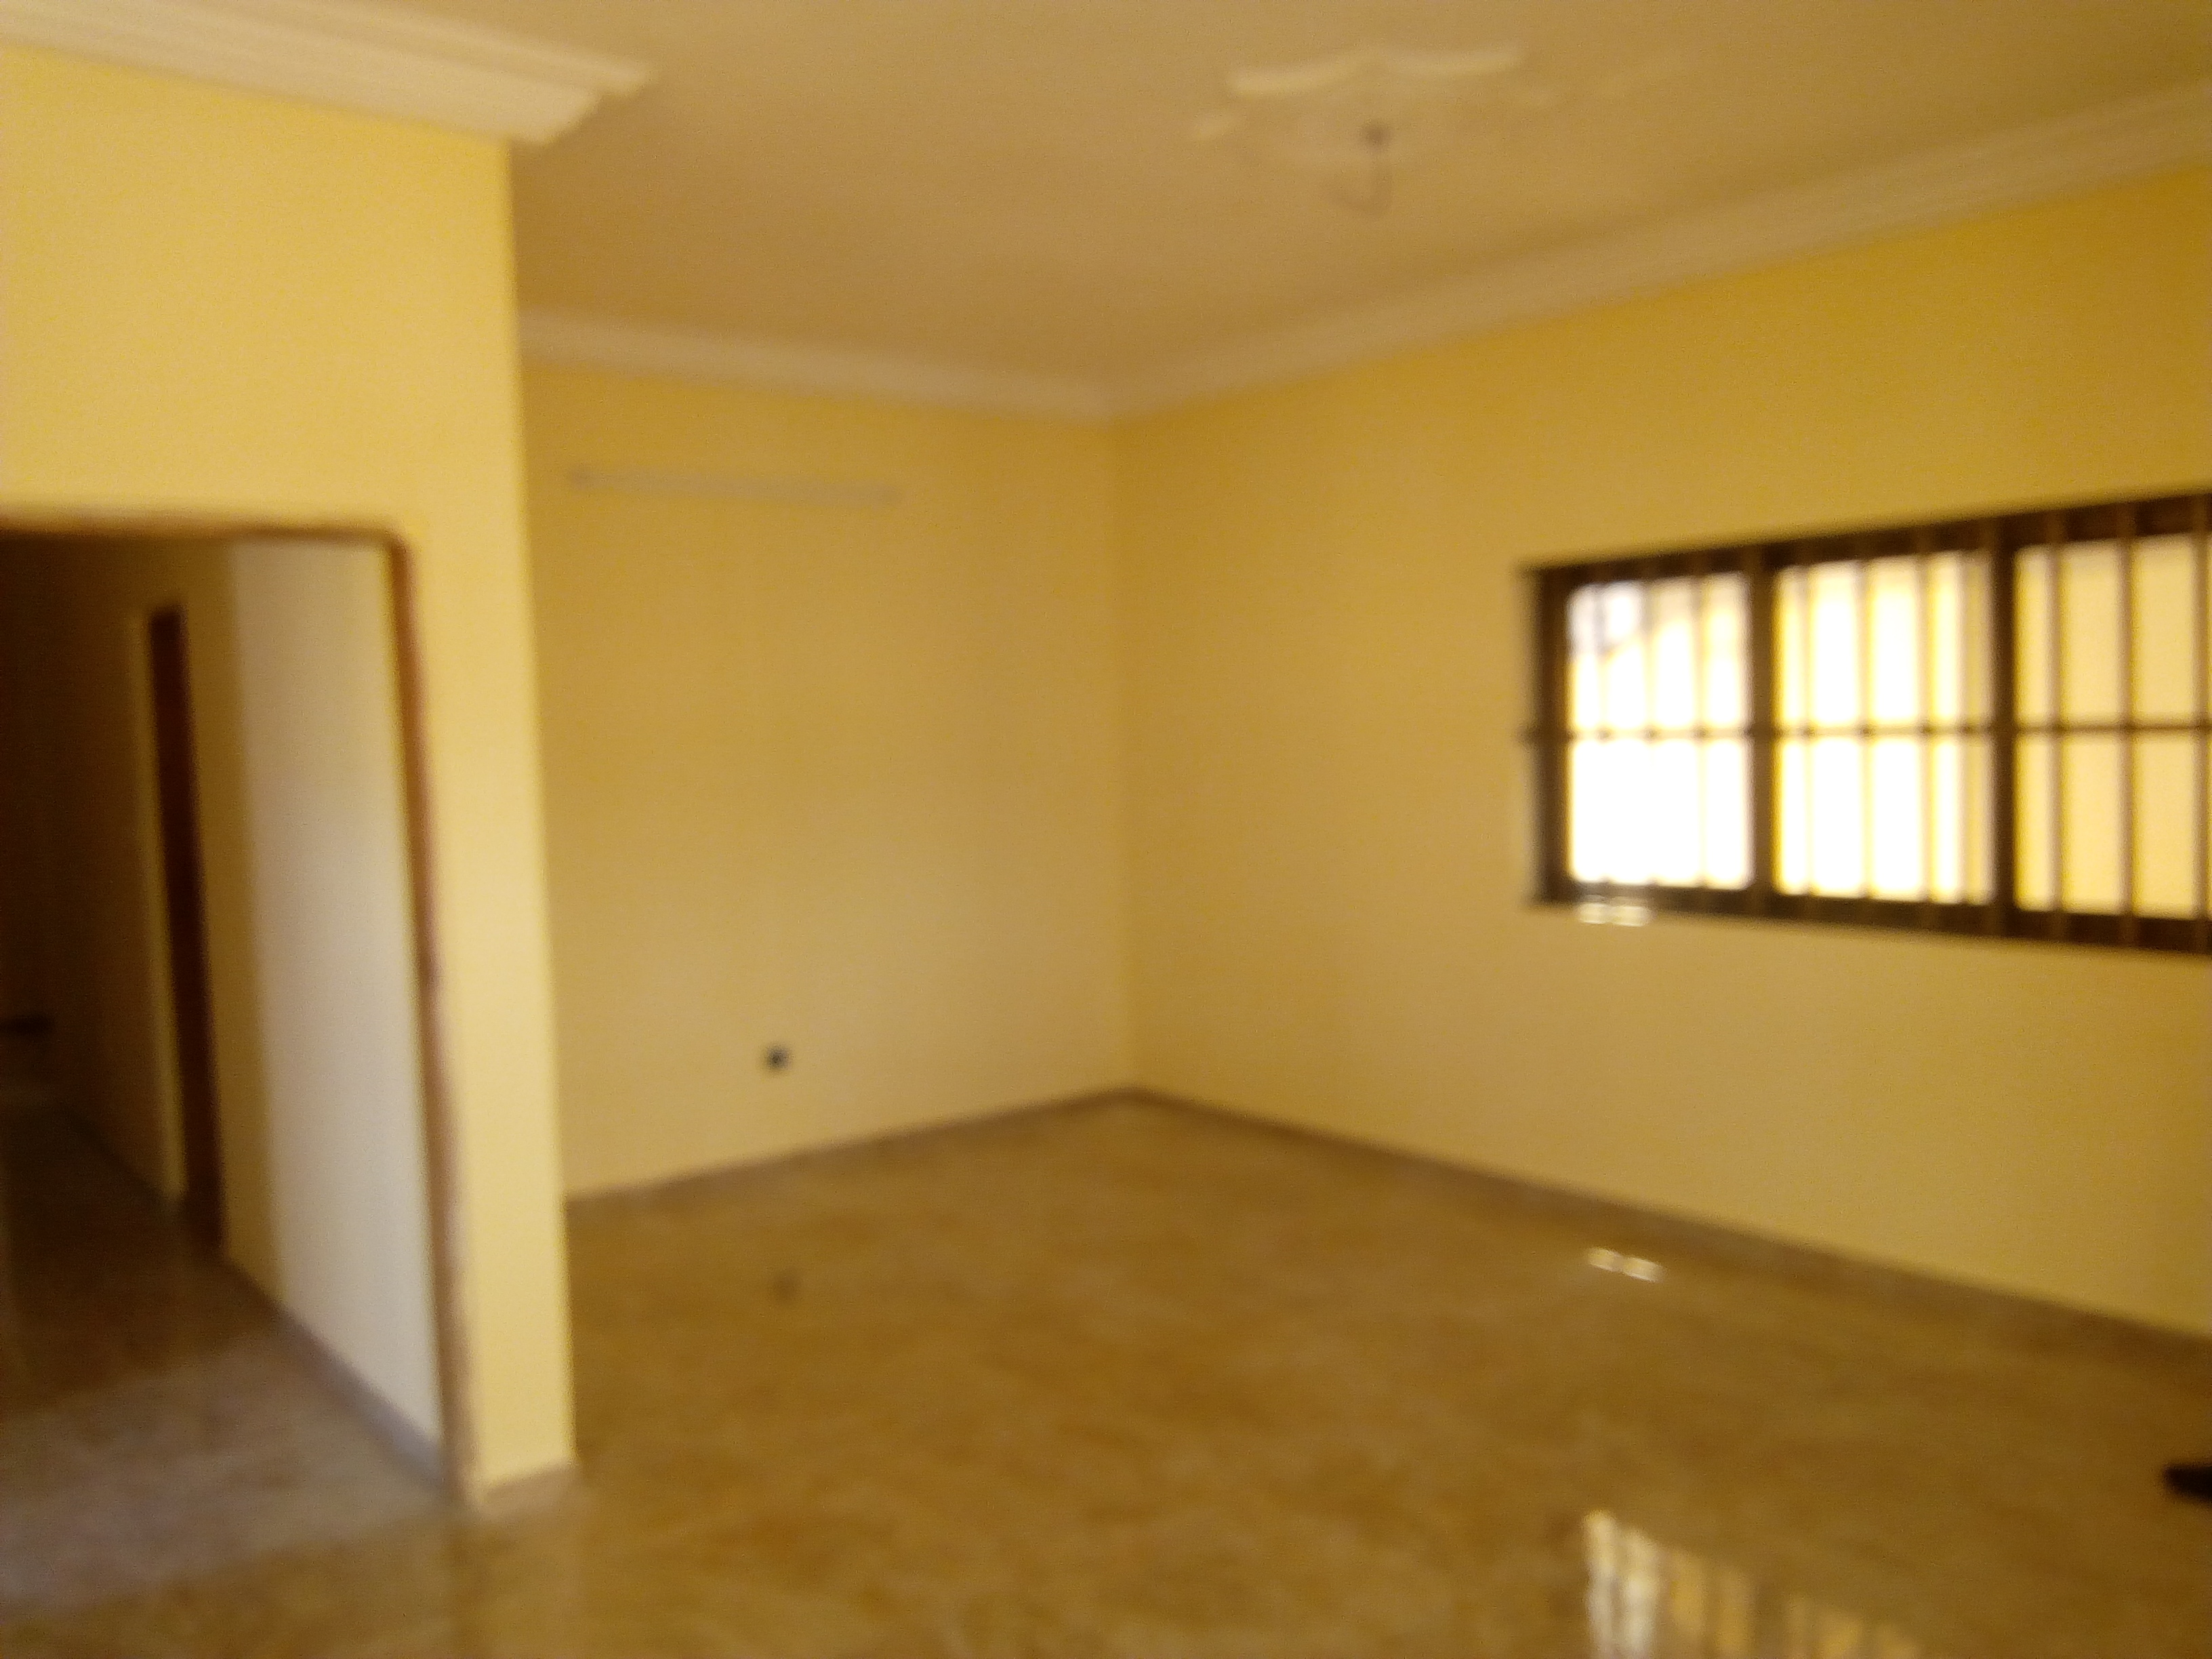 N° 4190 :
                            Villa à louer , Agbata, Lome, Togo : 80 000 XOF/mois